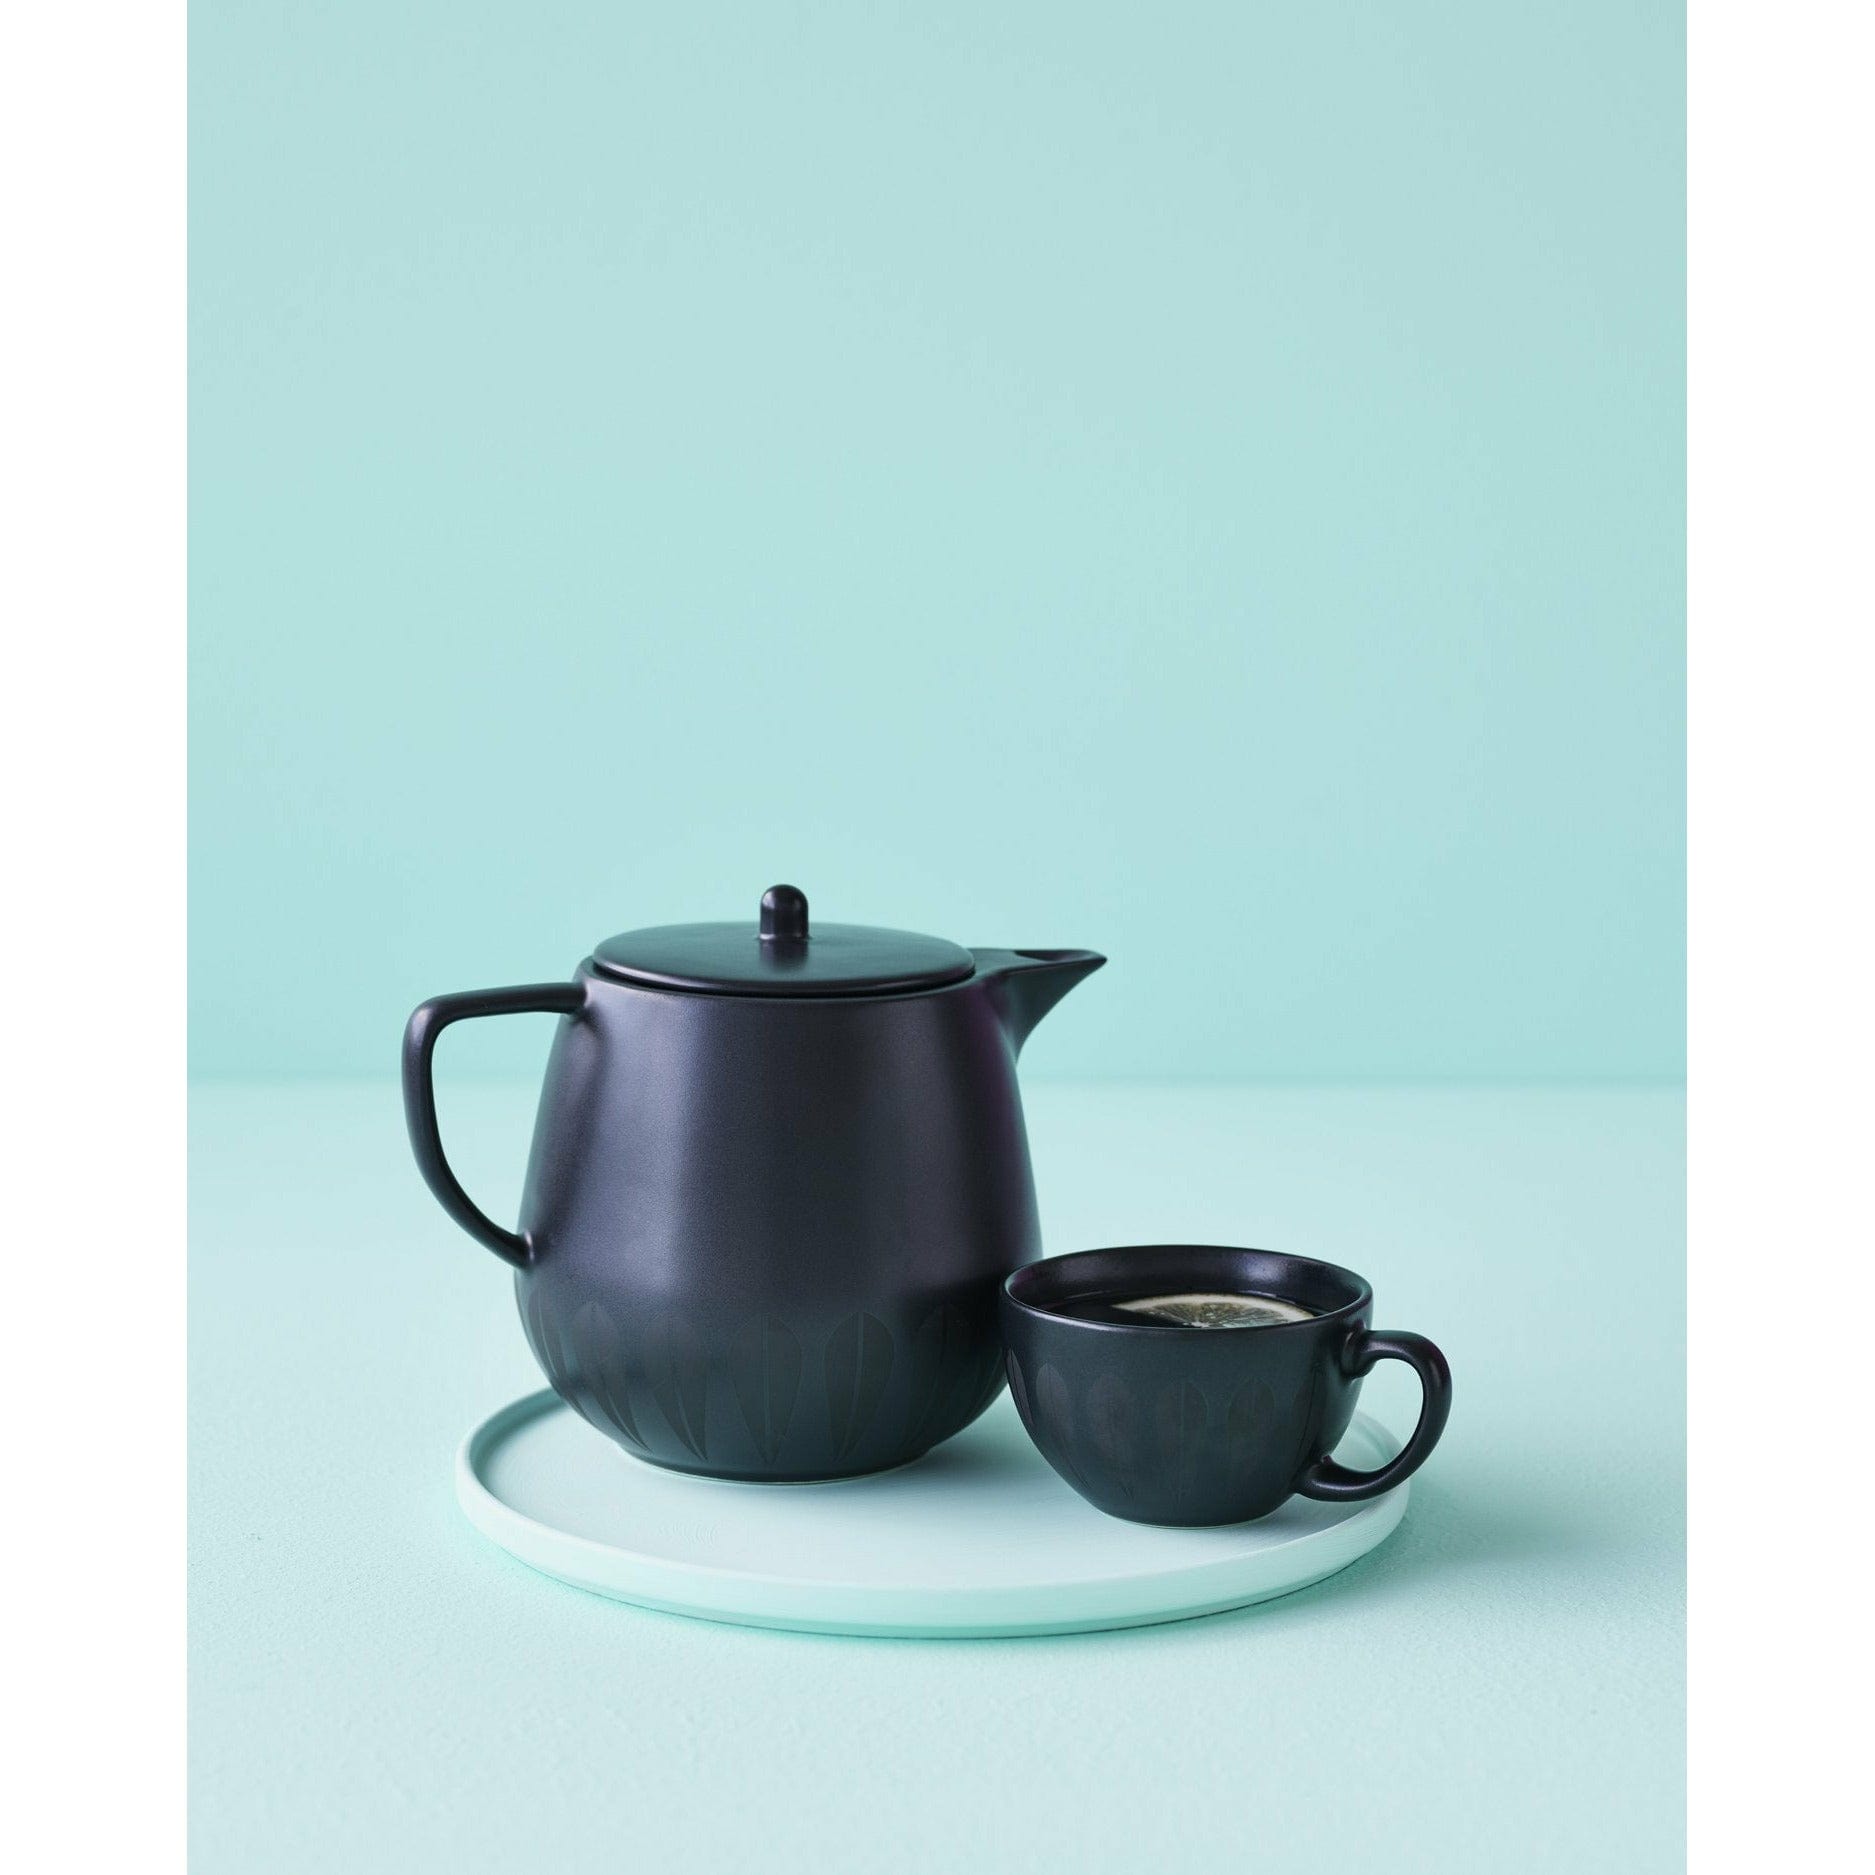 Lucie Kaas Arne Clausen Lotus Teapot, svart